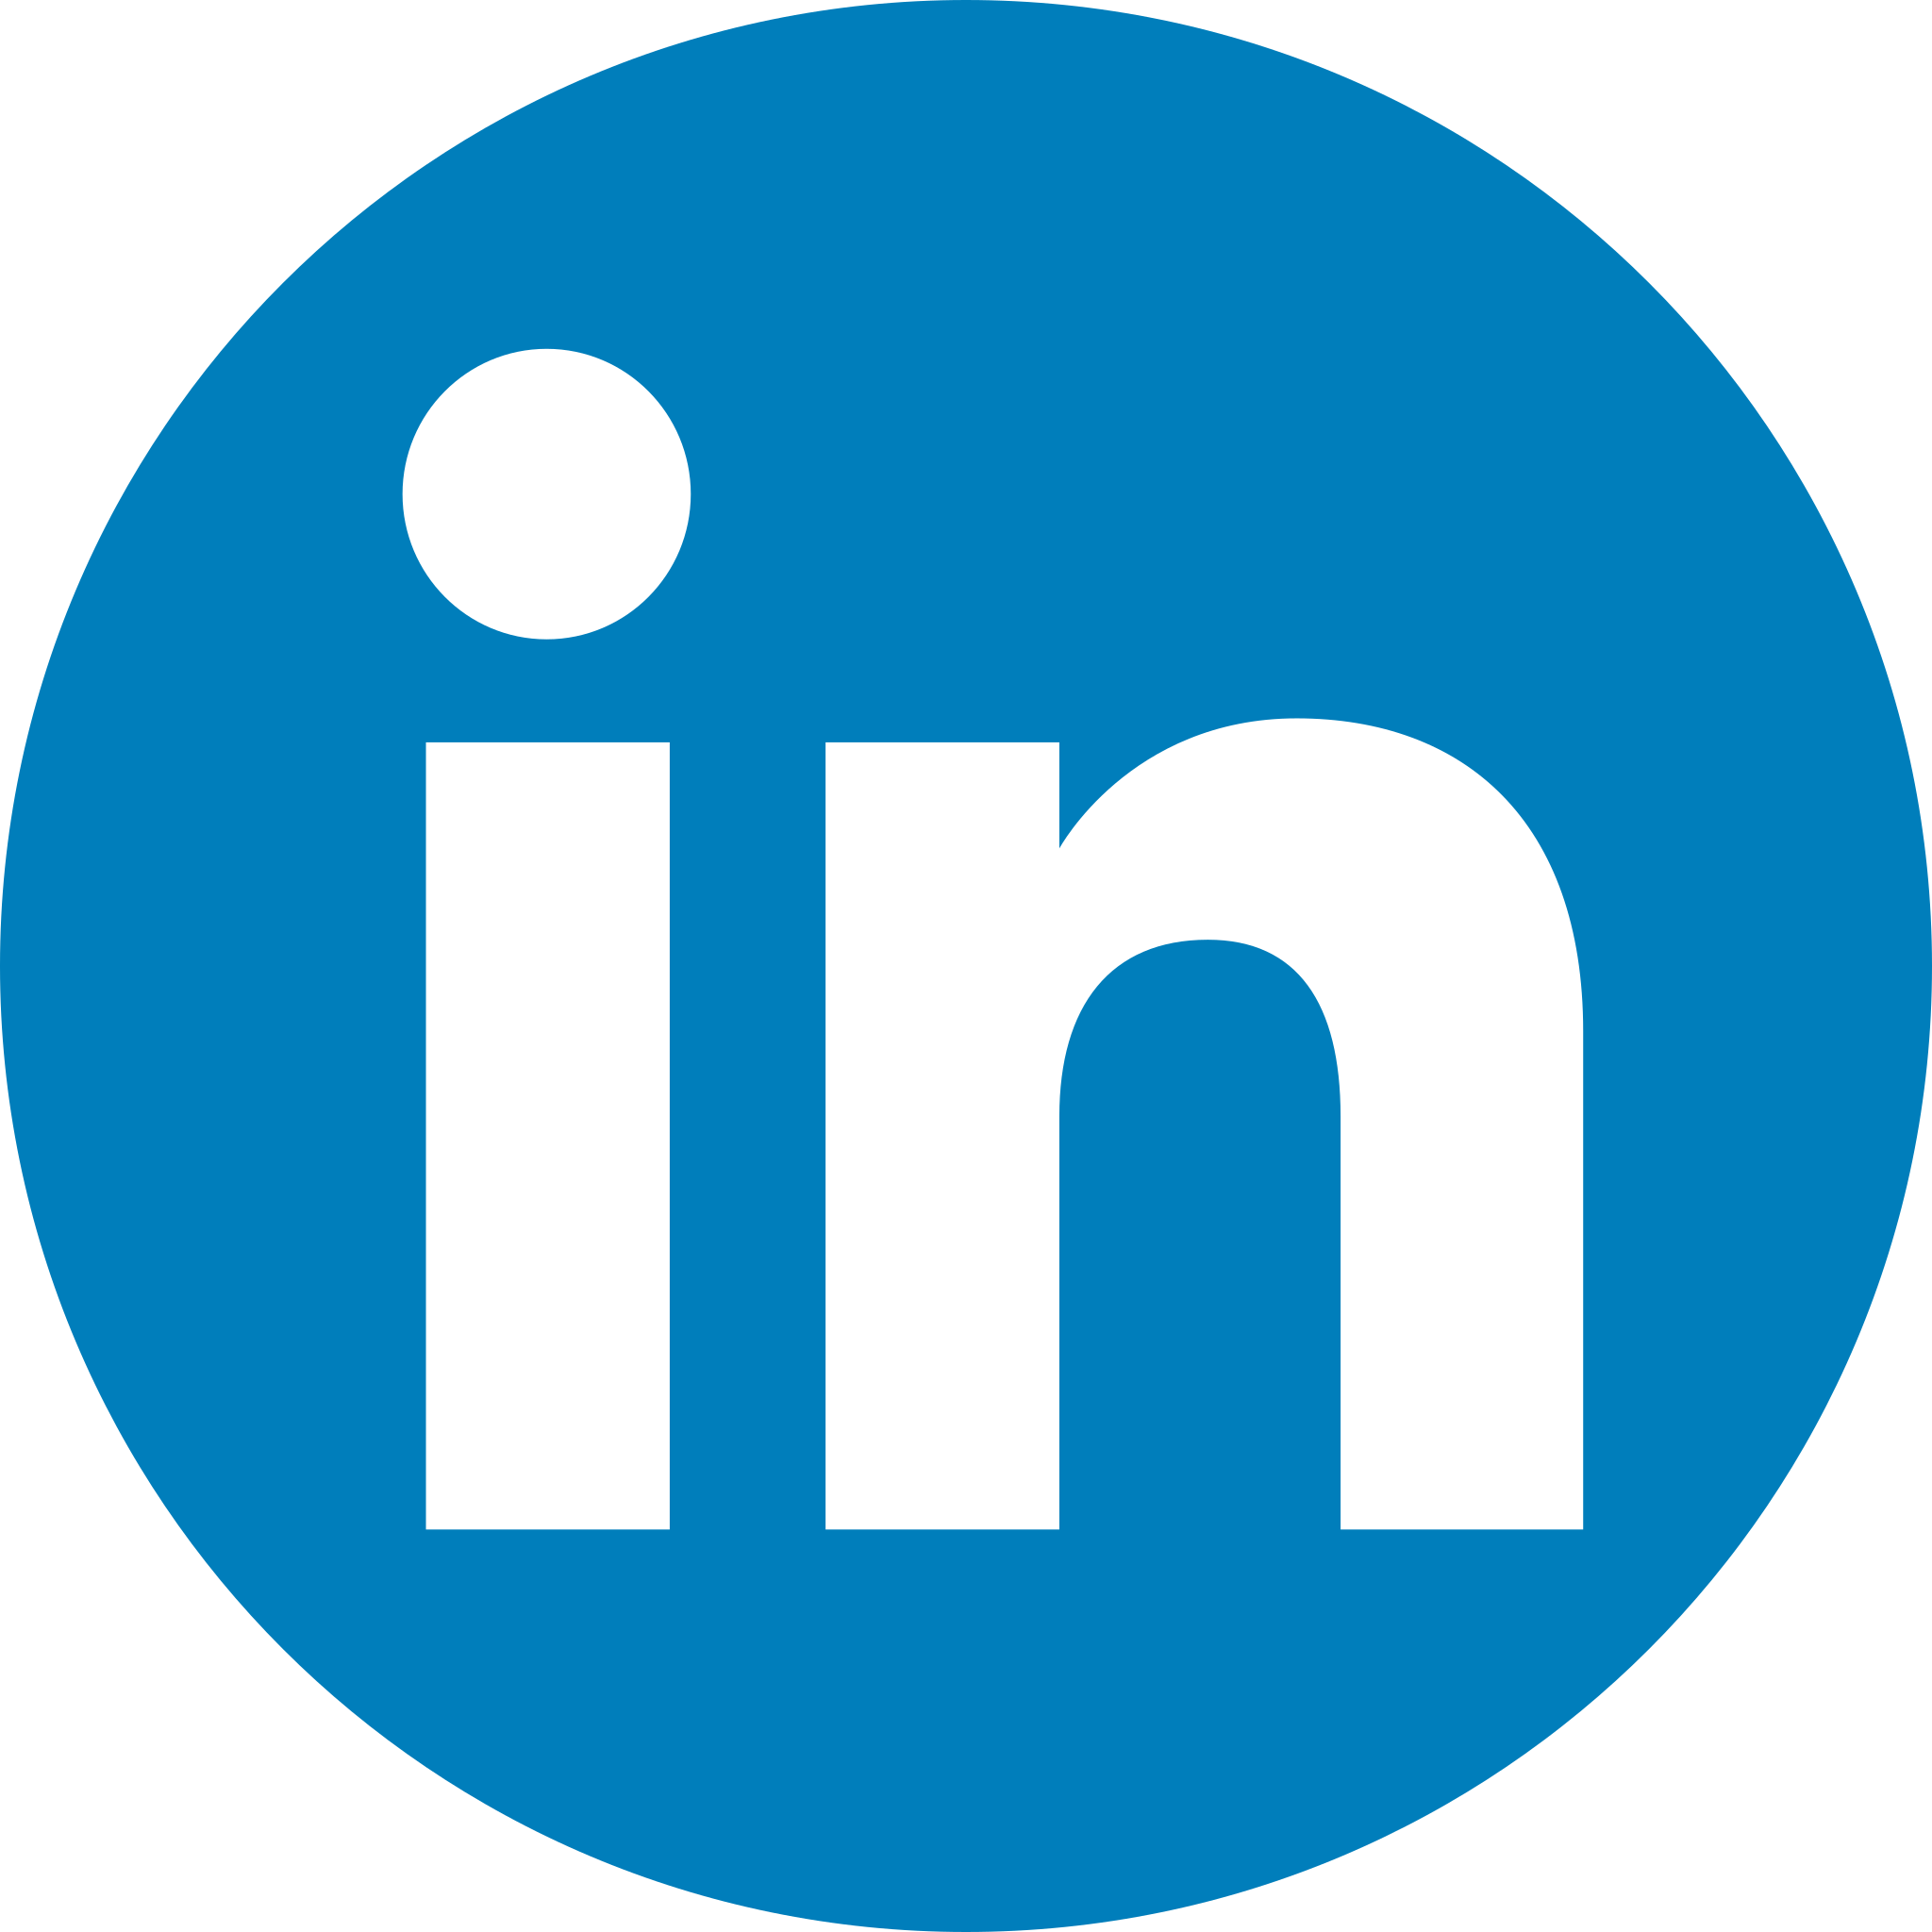 LinkedIn_icon_circle.svg.png